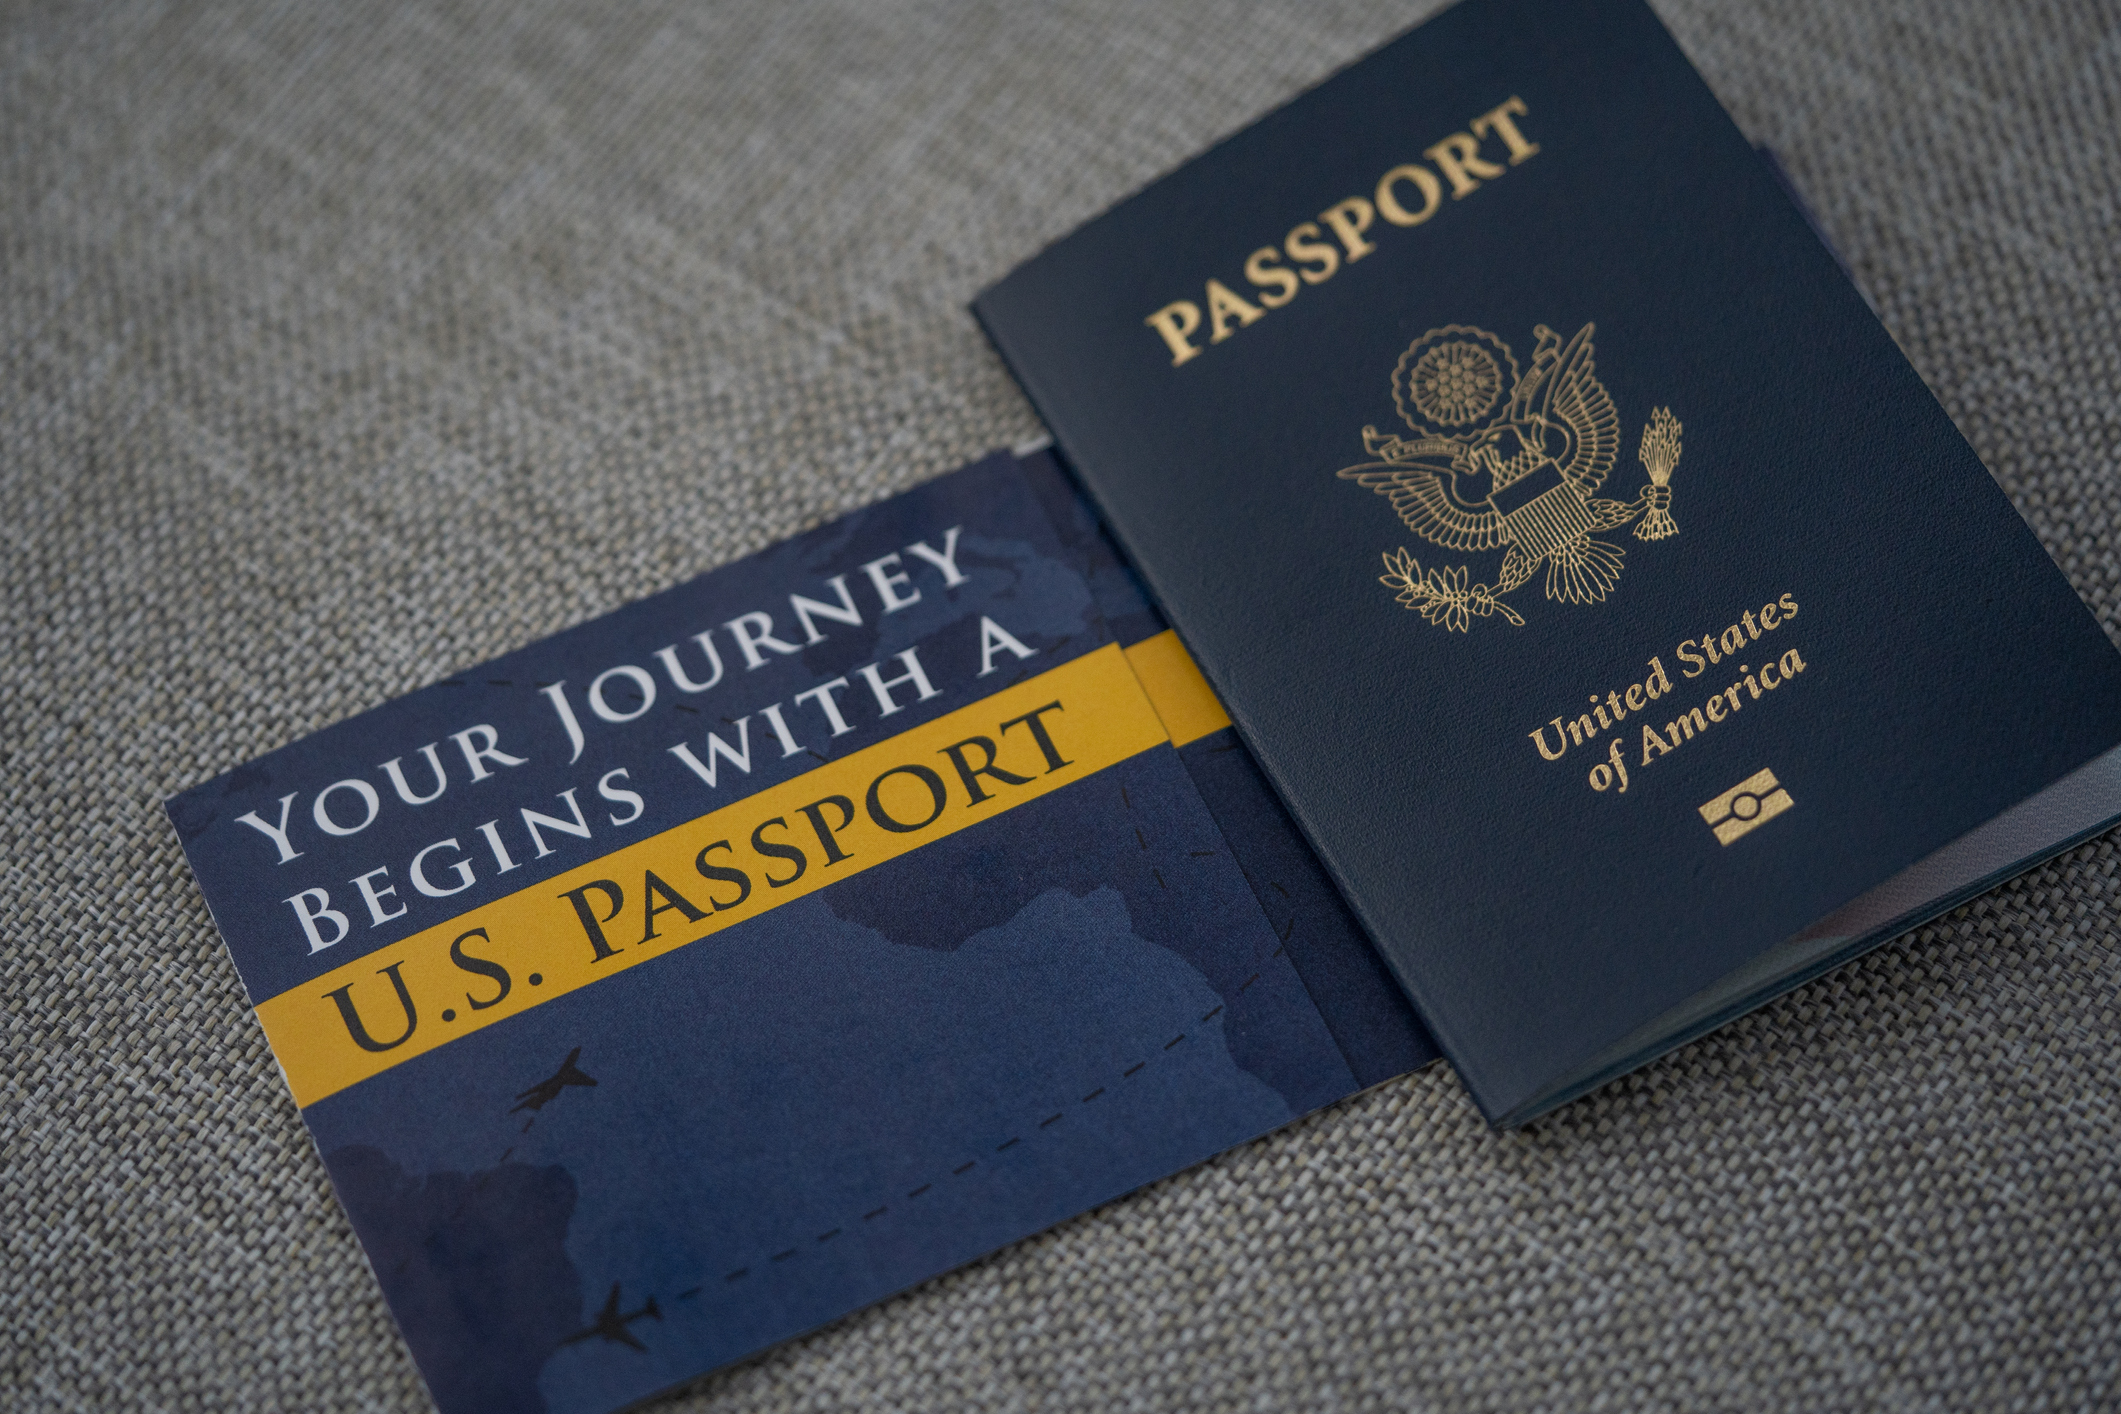 Paspor dari negara asal Anda adalah dokumen yang diperlukan untuk perjalanan internasional (foto dari iStock)